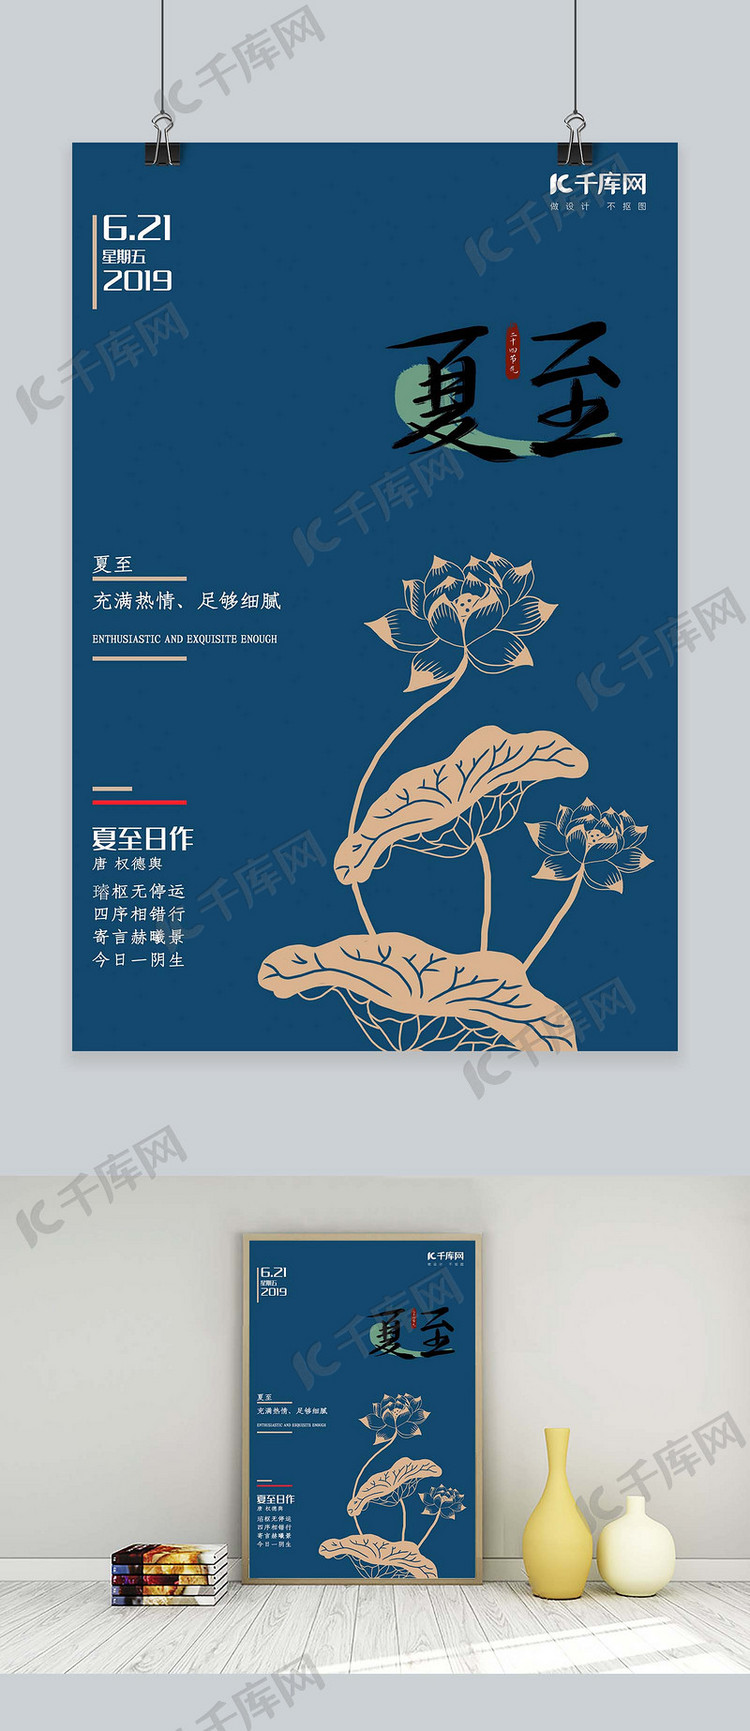 夏至海报 二十四节气 中国传统节气海报剪纸风